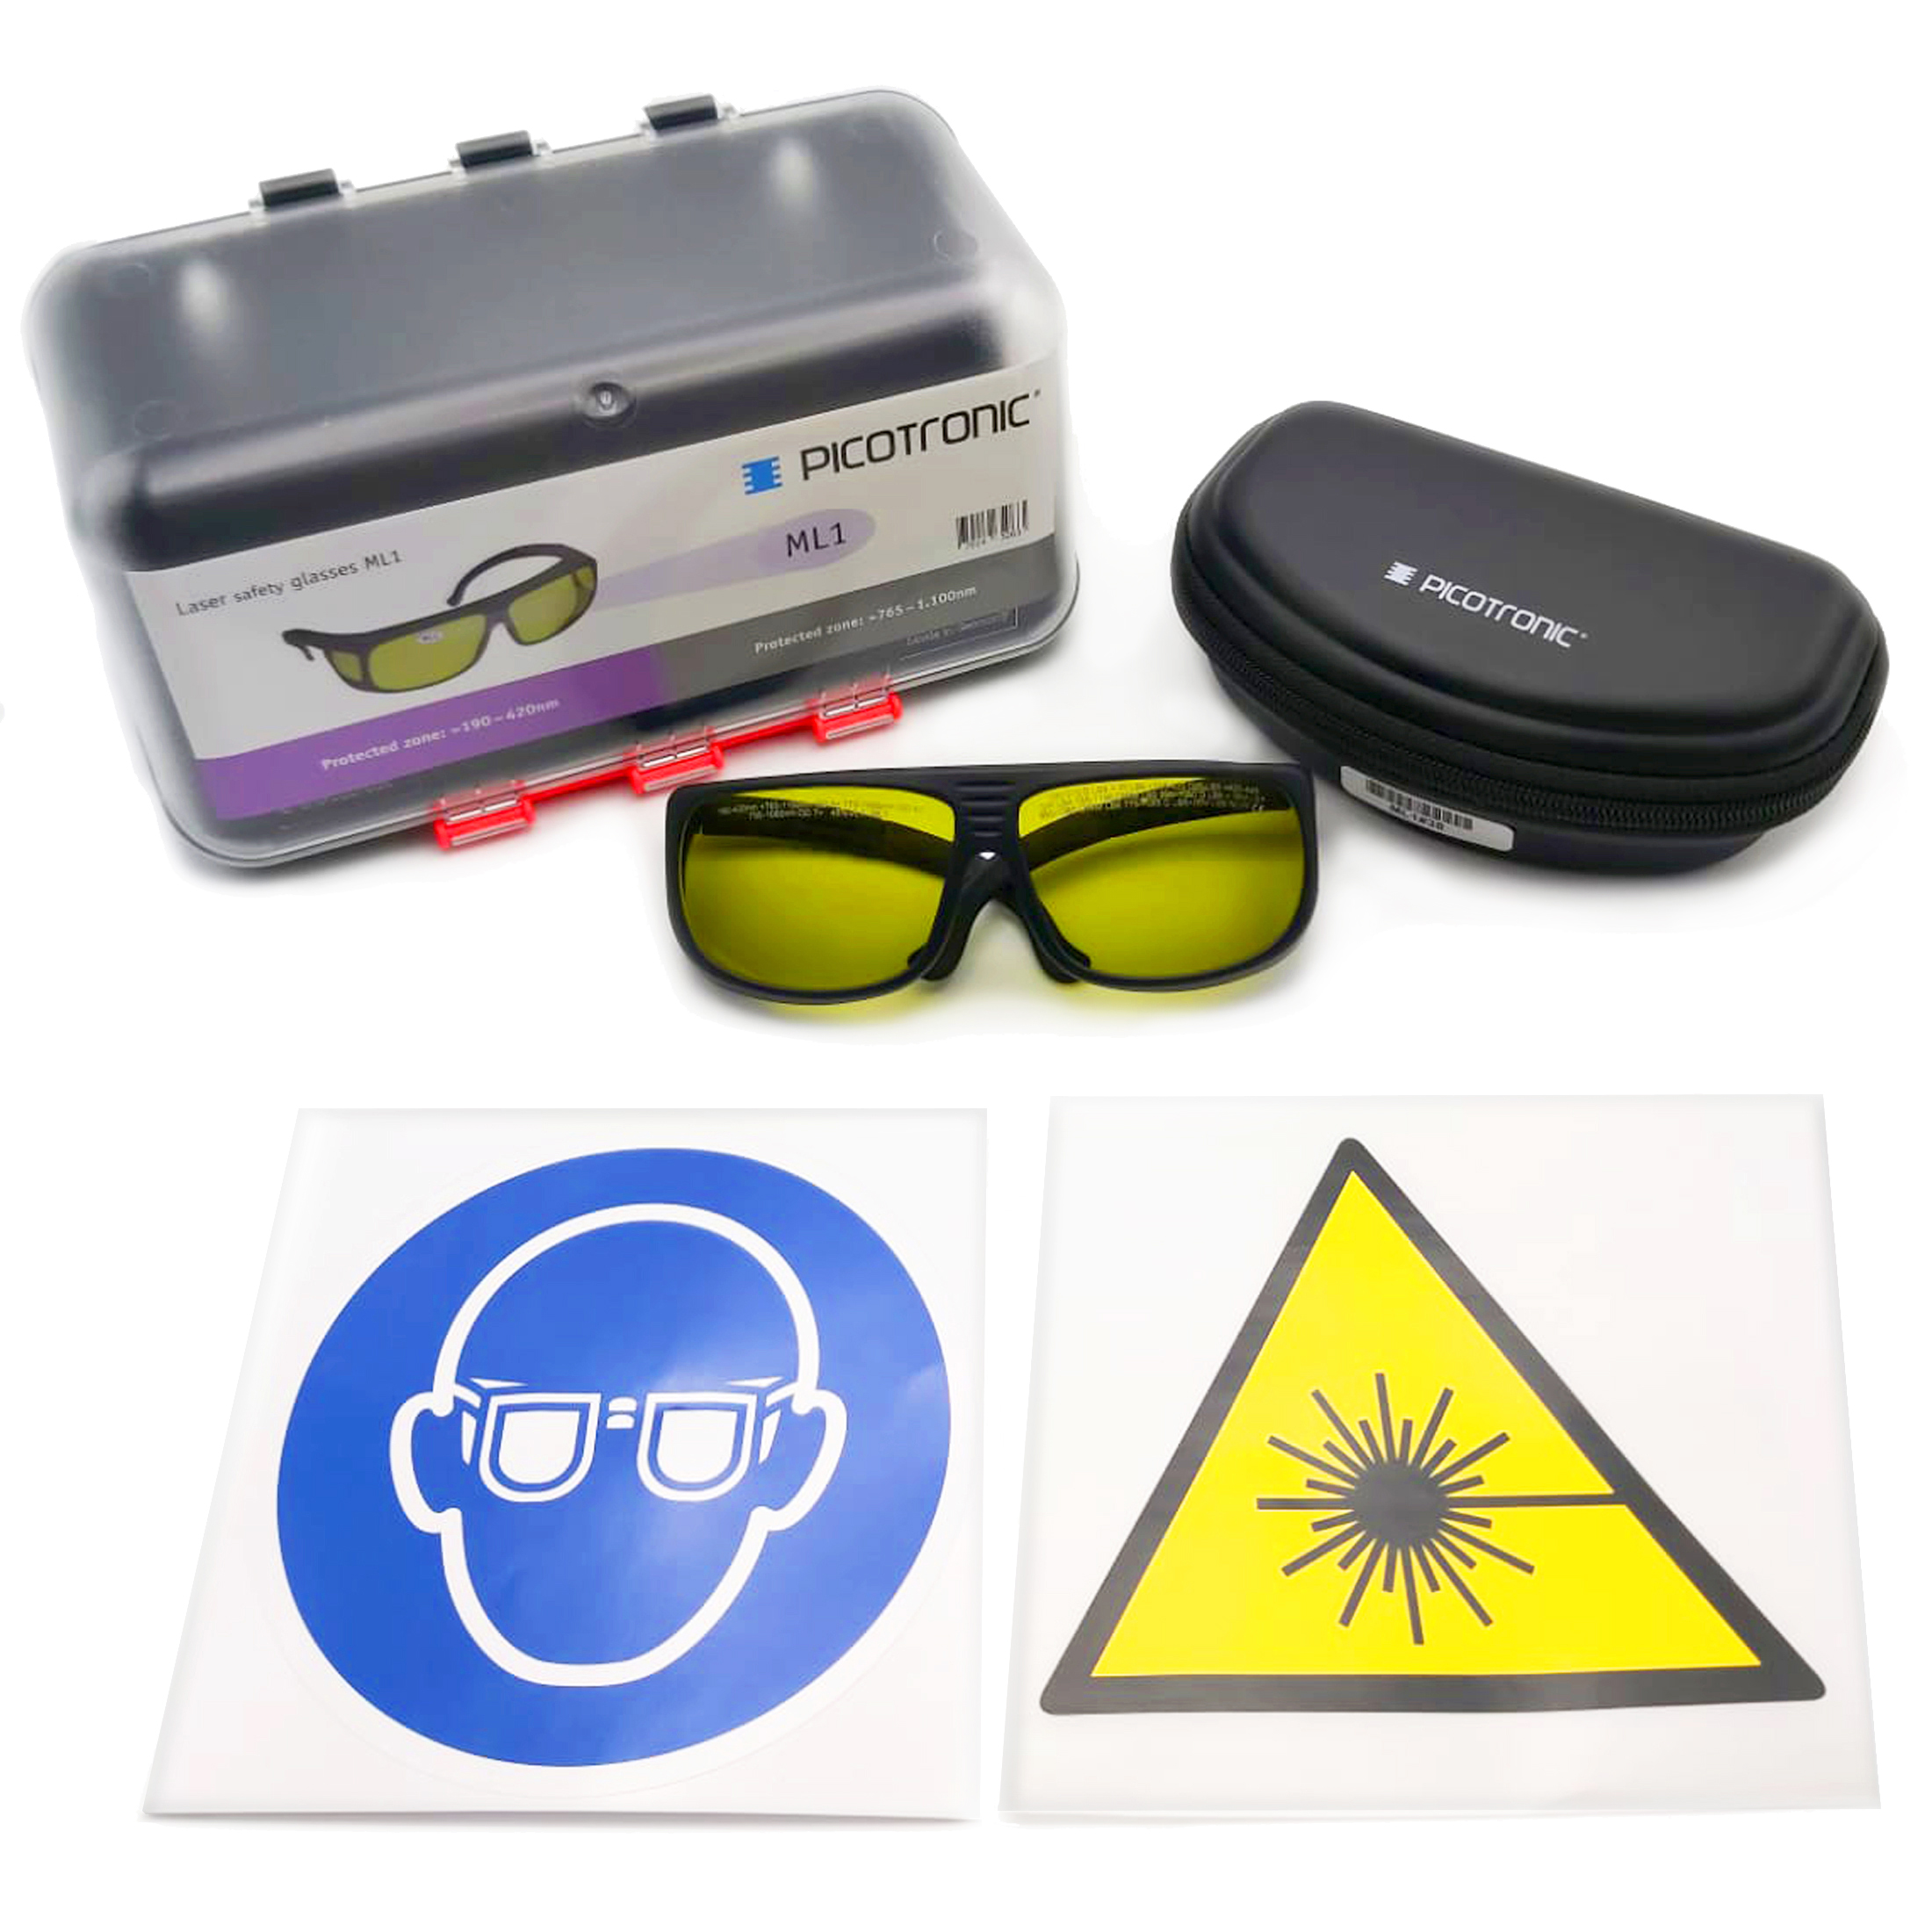 Laserschutzbrillen-Set, zertifiziert nach DIN EN207, infrarot. Für Anwendungen im medizischen und k…